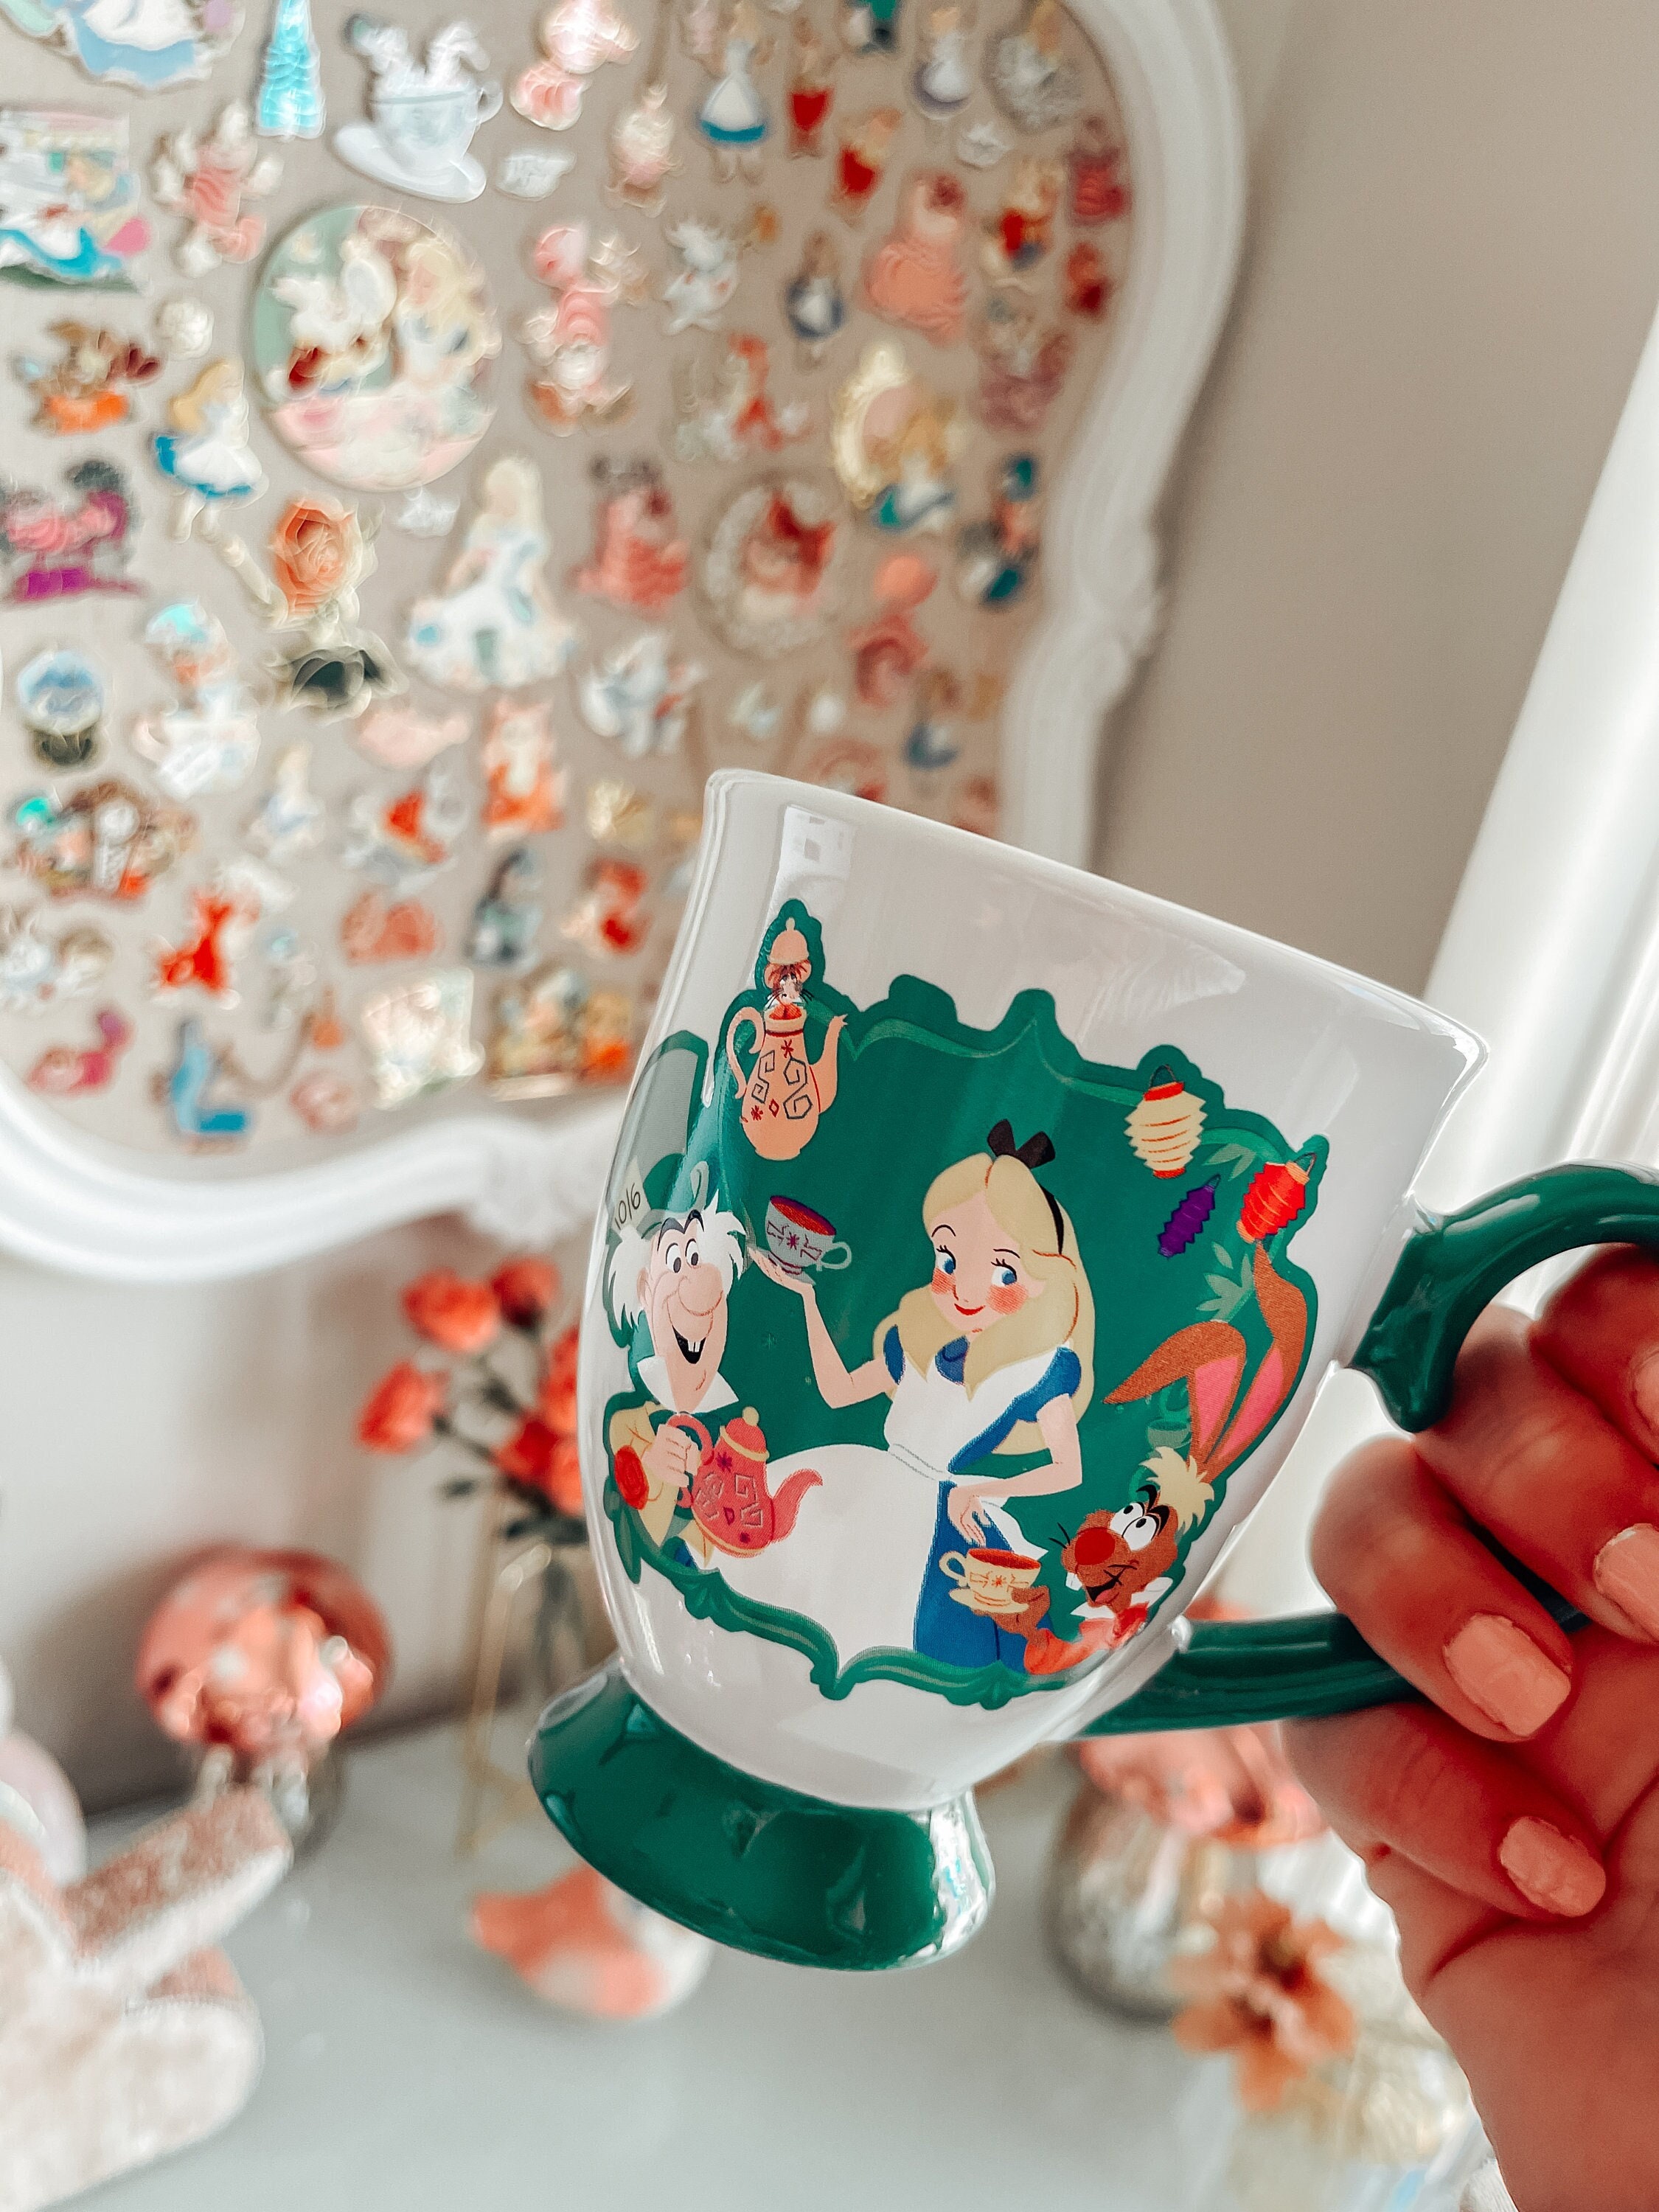 Disney Mug - Alice in Wonderland Color Changing Teacup